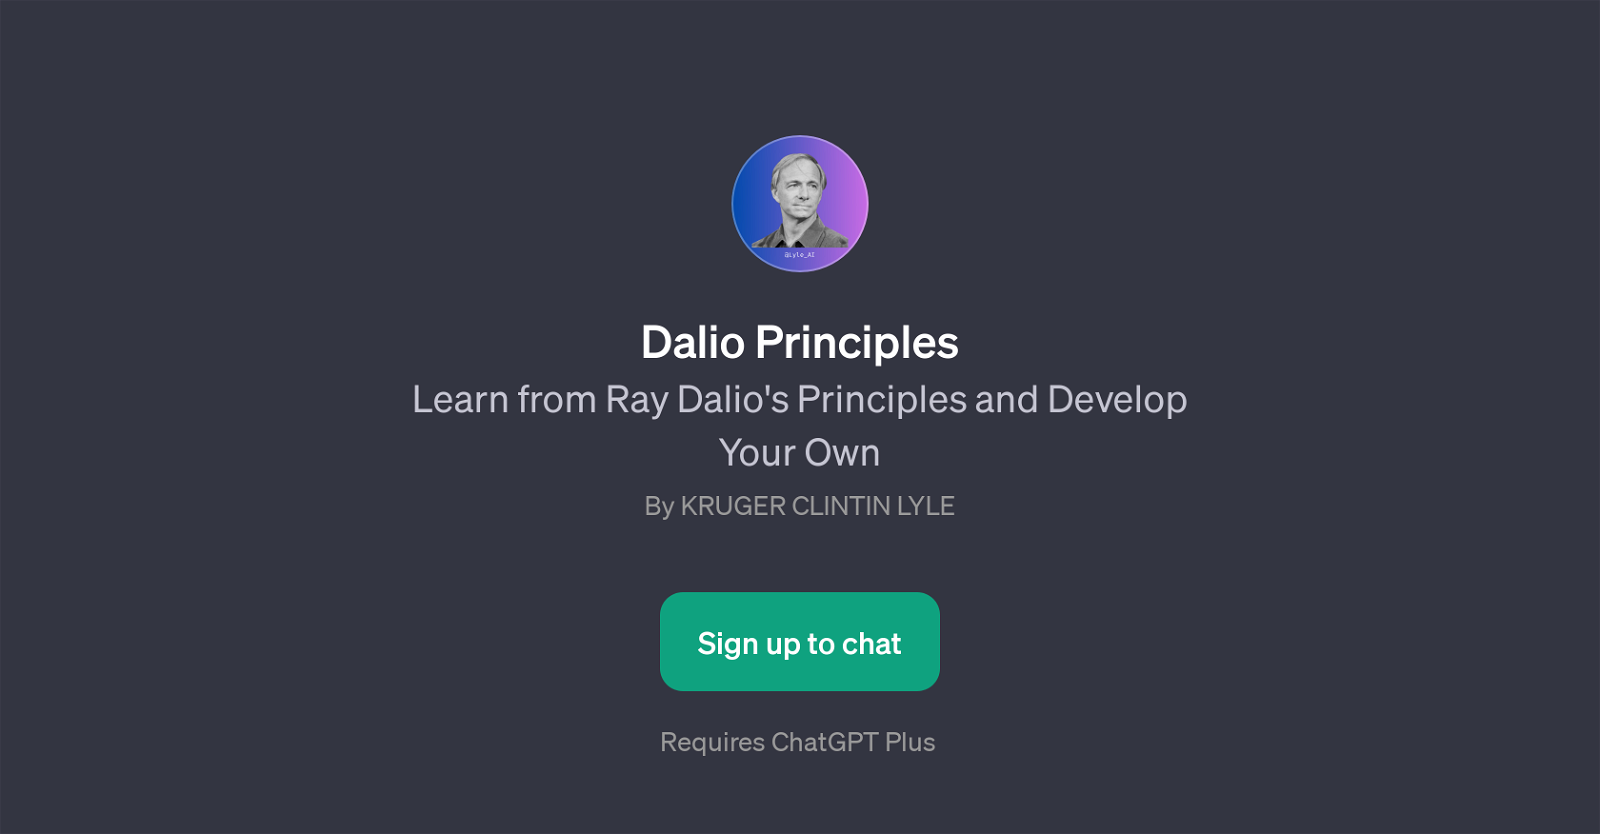 Dalio Principles website